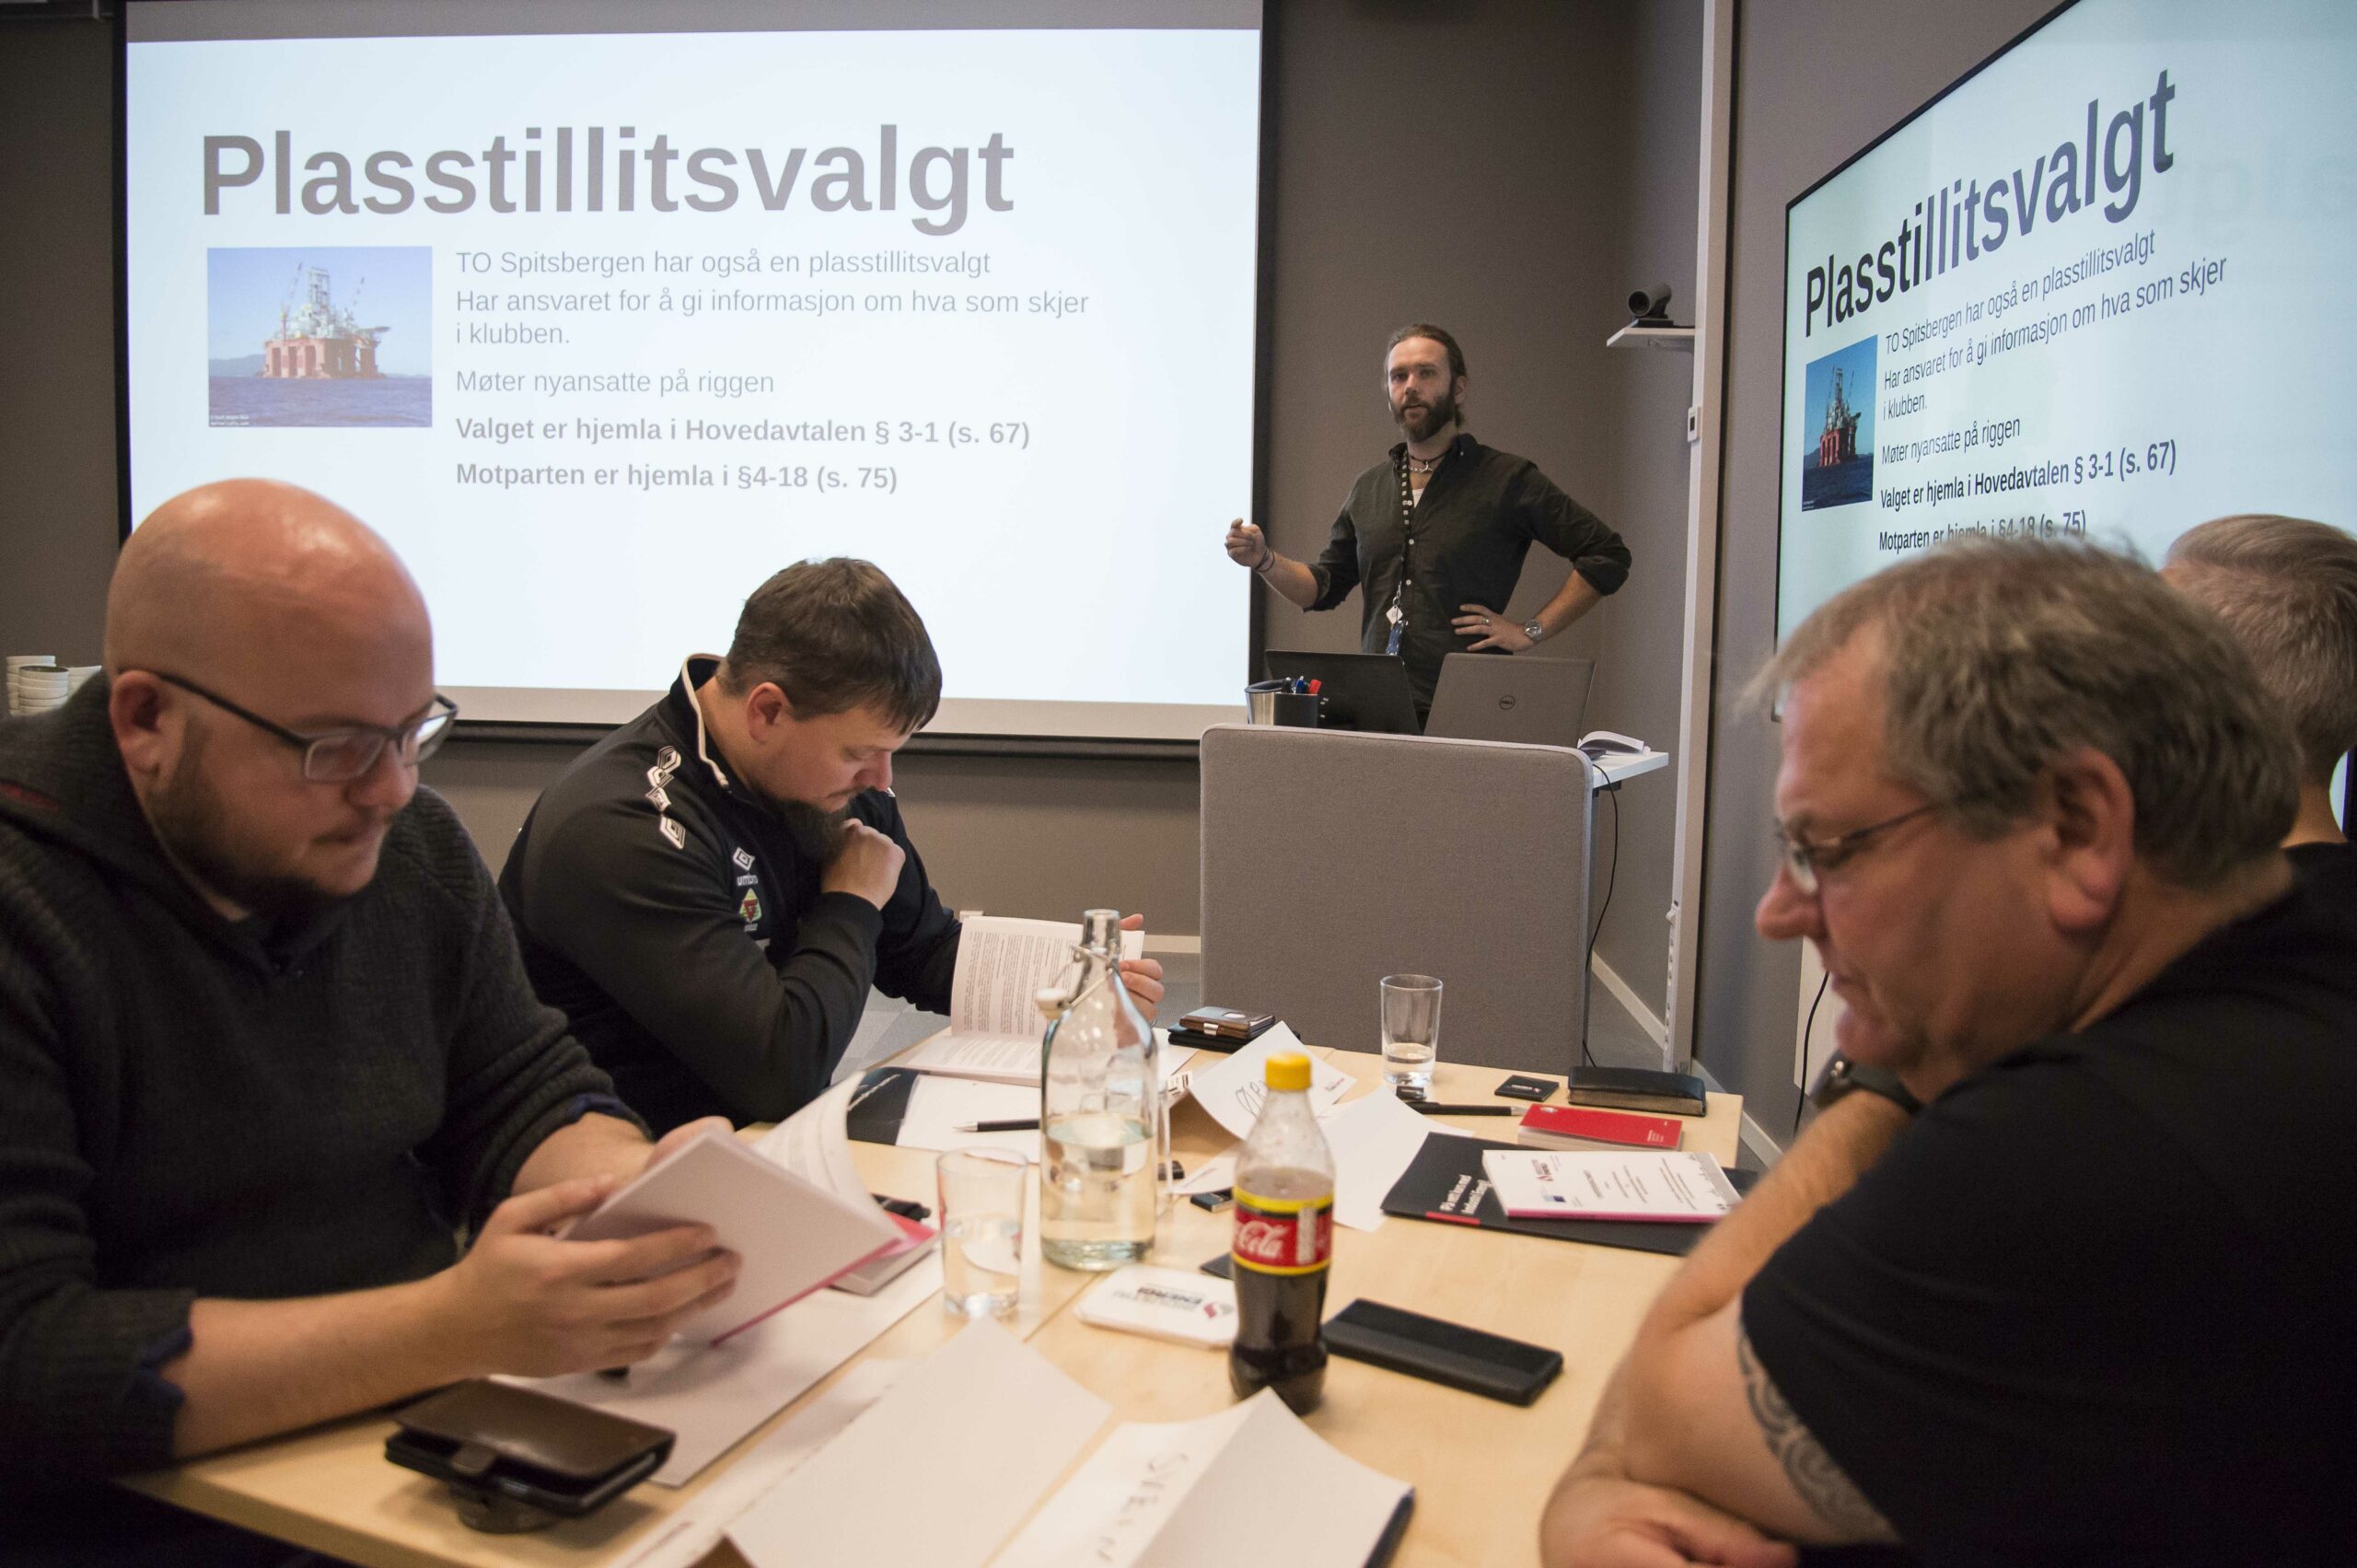 Ommund Stokka sier rekruttering er avgjørende for alt klubbarbeid. Foto: Atle Espen Helgesen